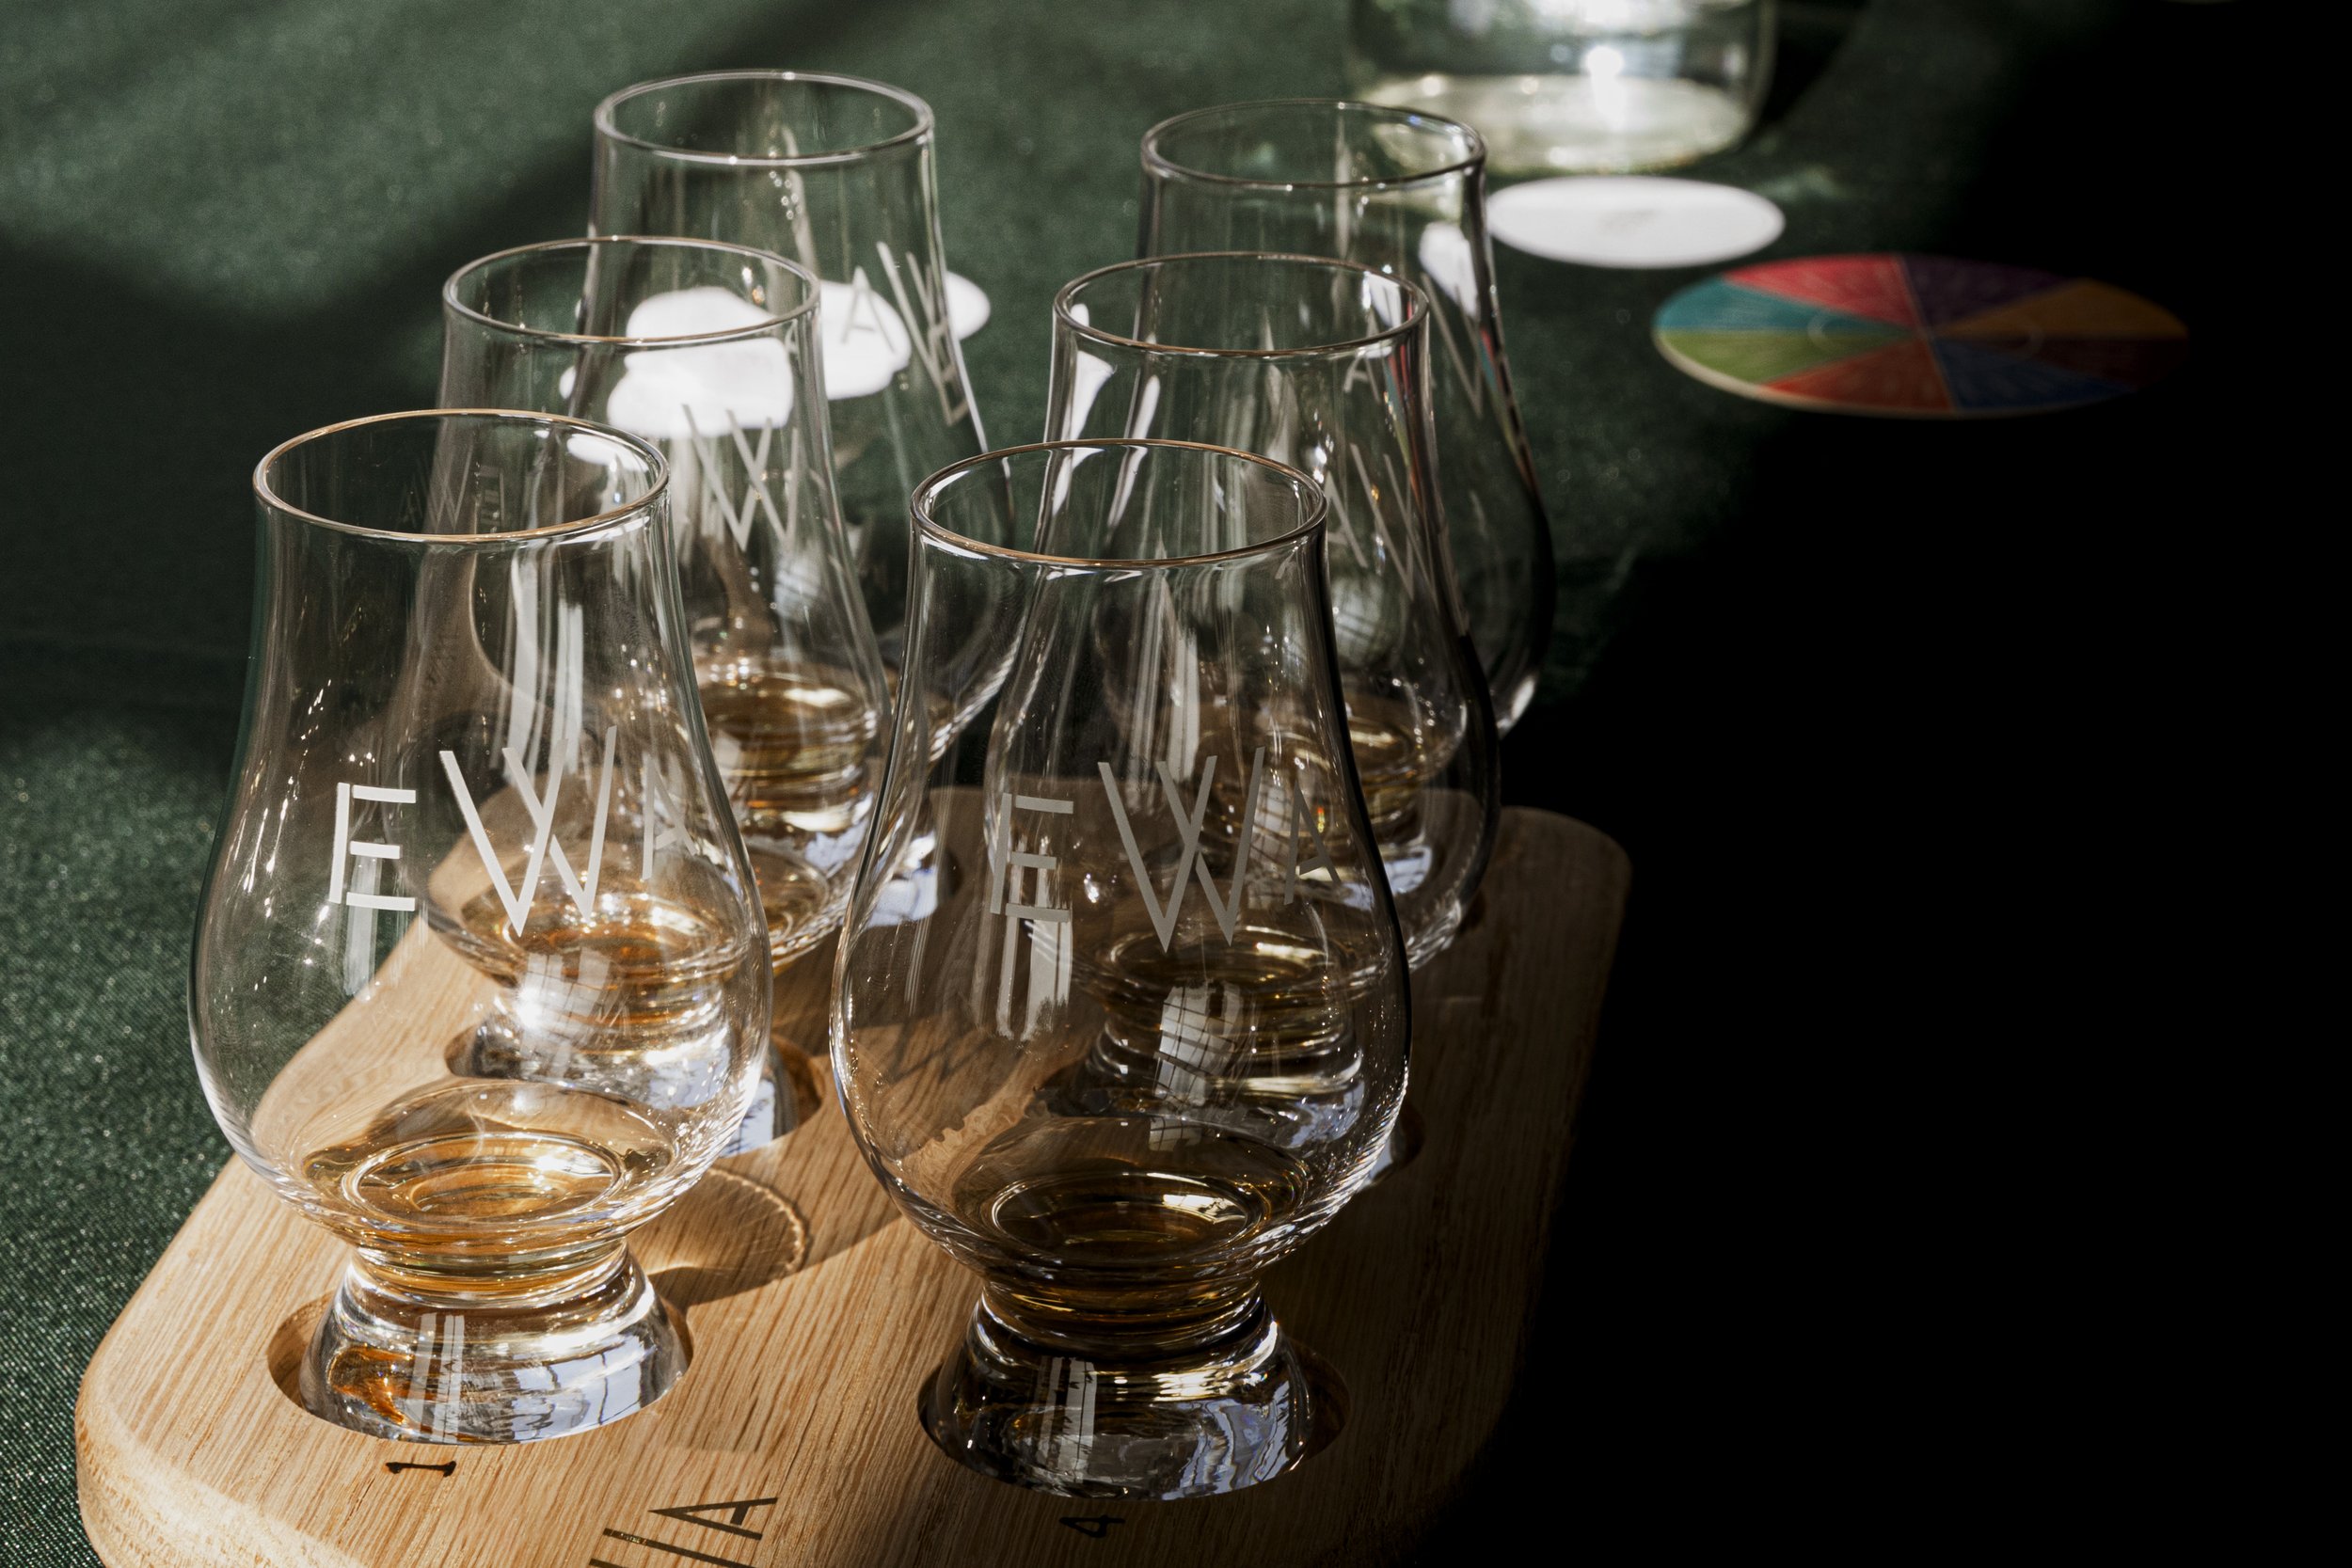 Edinburgh Whisky Academy